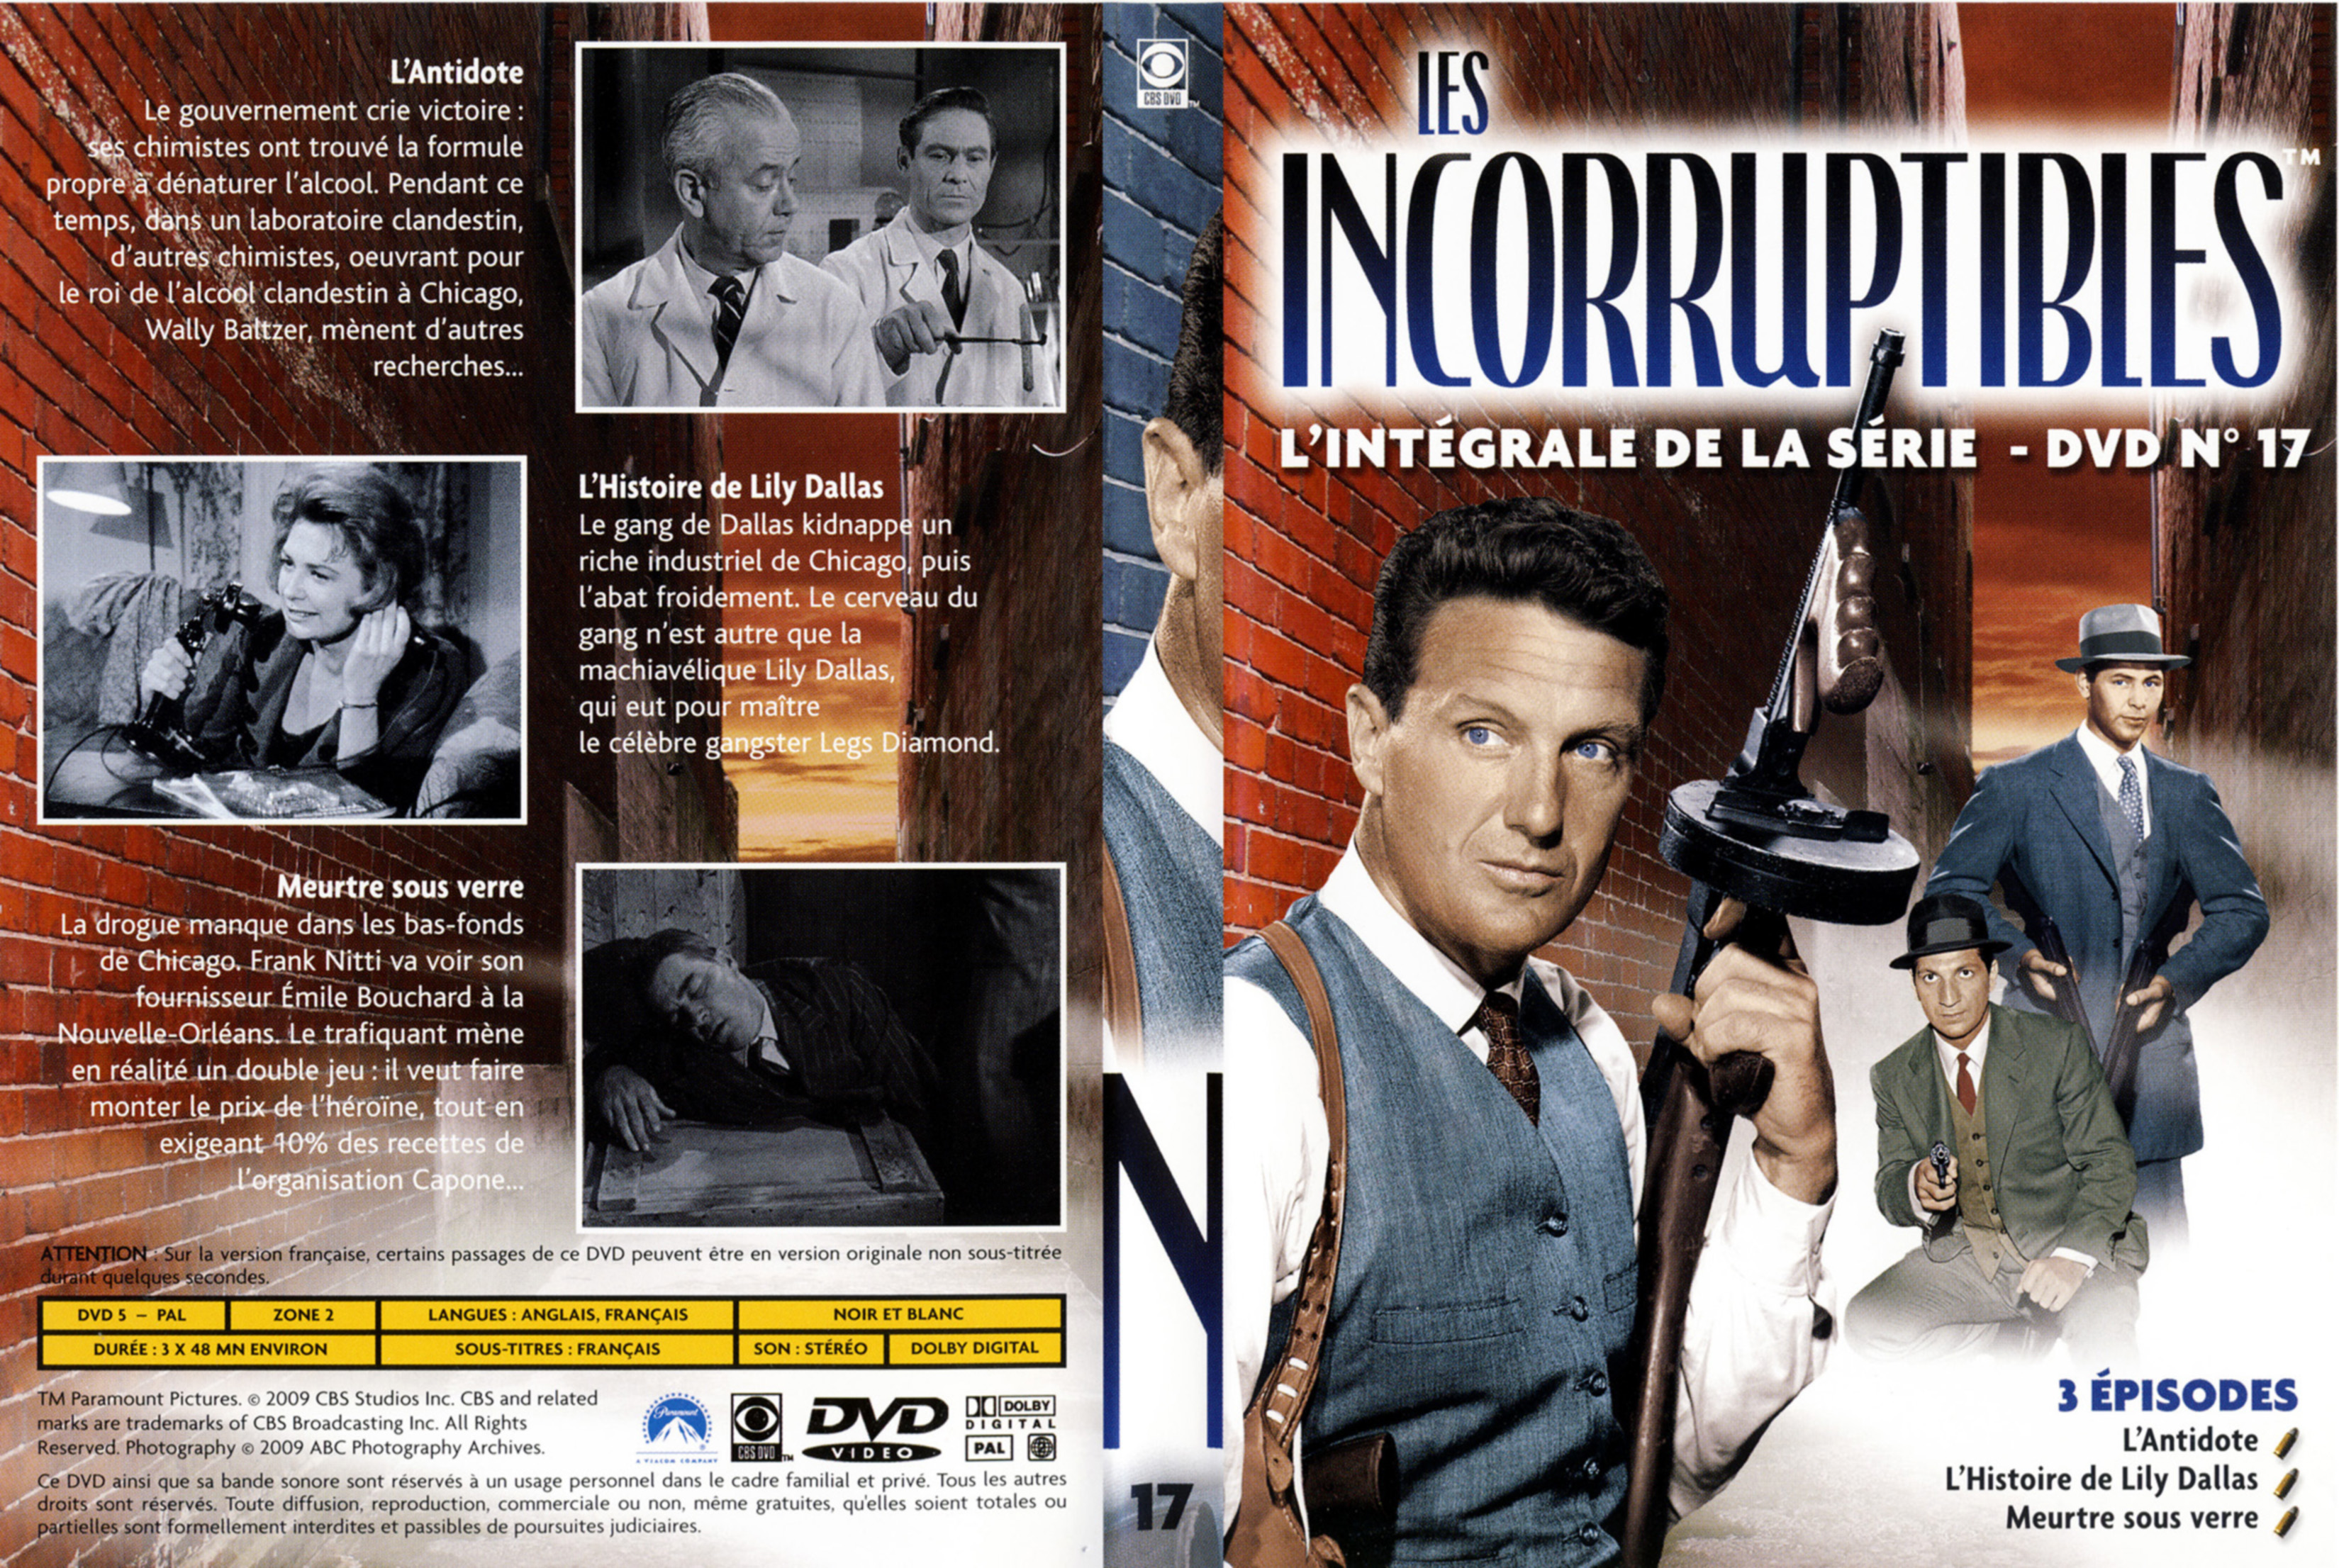 Jaquette DVD Les incorruptibles intgrale DVD 17